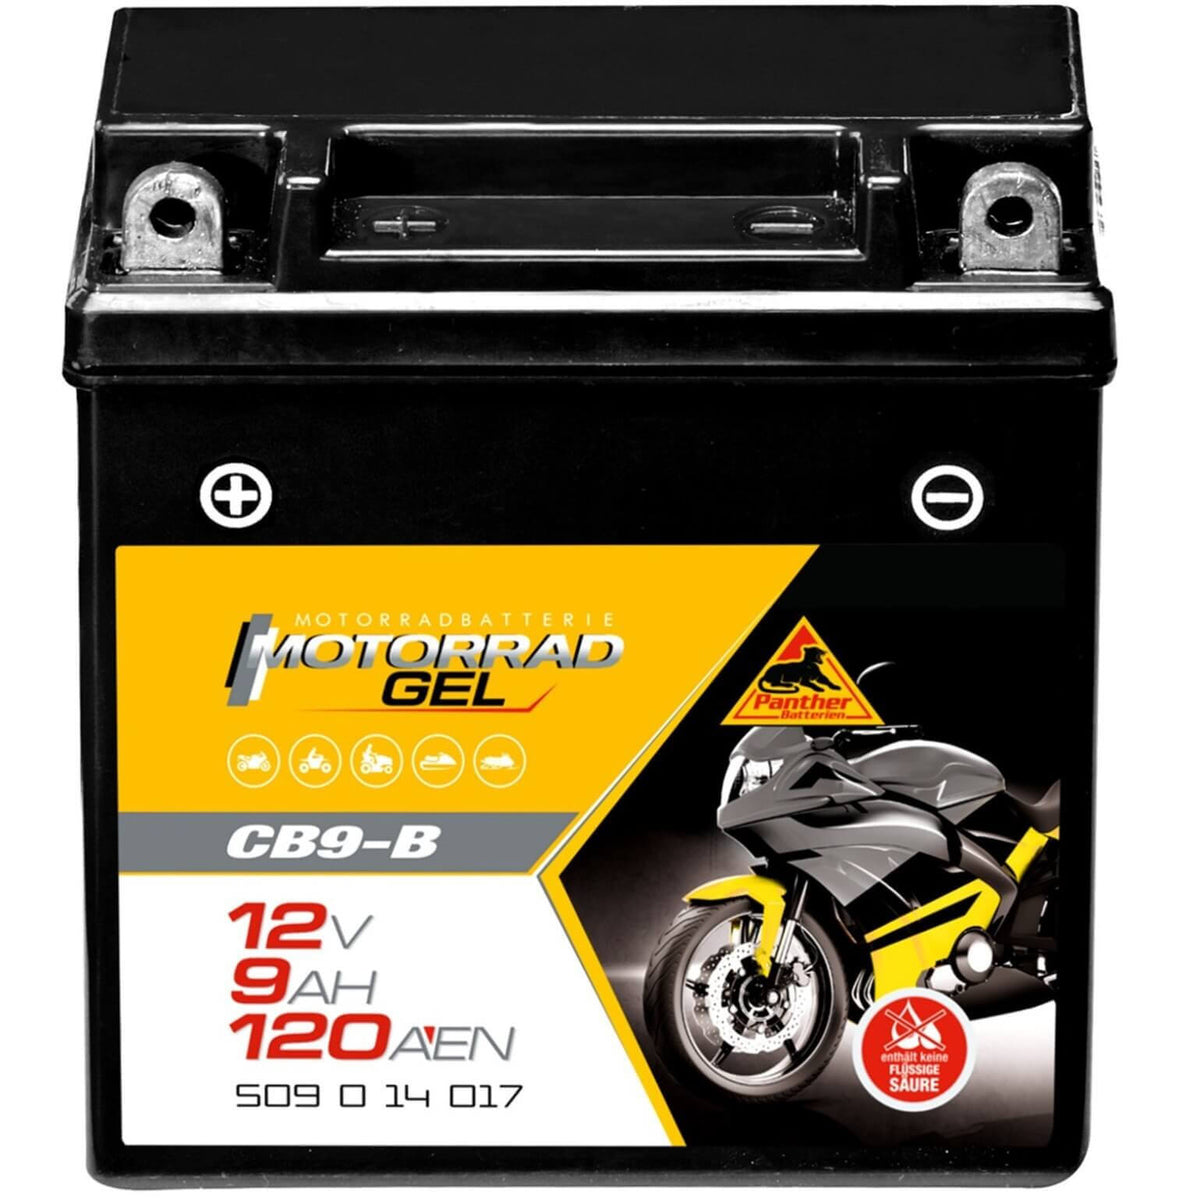 https://www.batterie-industrie-germany.de/cdn/shop/files/Motorradbatterie-Motorrad-GEL-CB9-B-PantherGEL50914-12V-9Ah-Front_1200x.jpg?v=1700731366